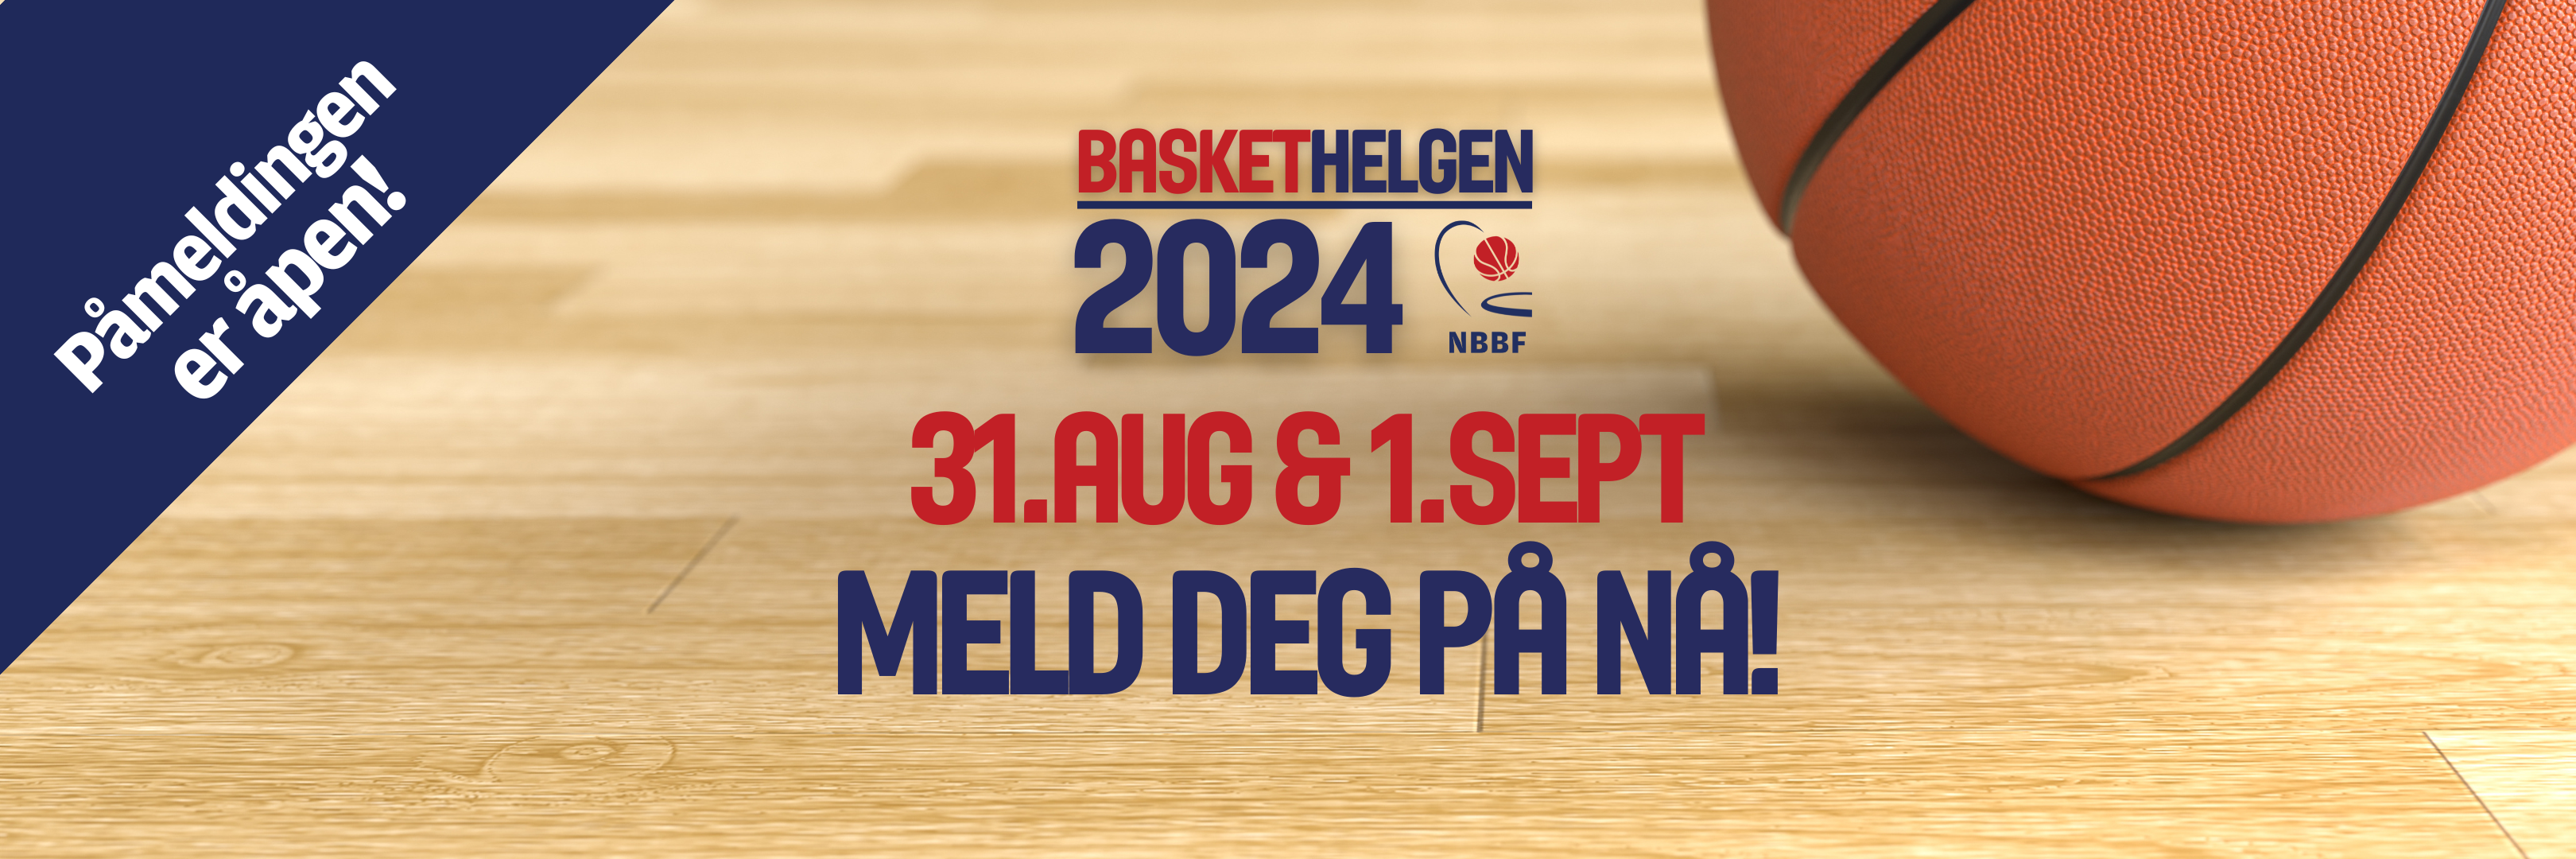 Baskethelgen 2024 går på Norges Idrettshøgskole lørdag den 31. august og søndag 1. september... book plass, middag, rom og reise nå! Så er du sikret plass til en rimeligere pris.